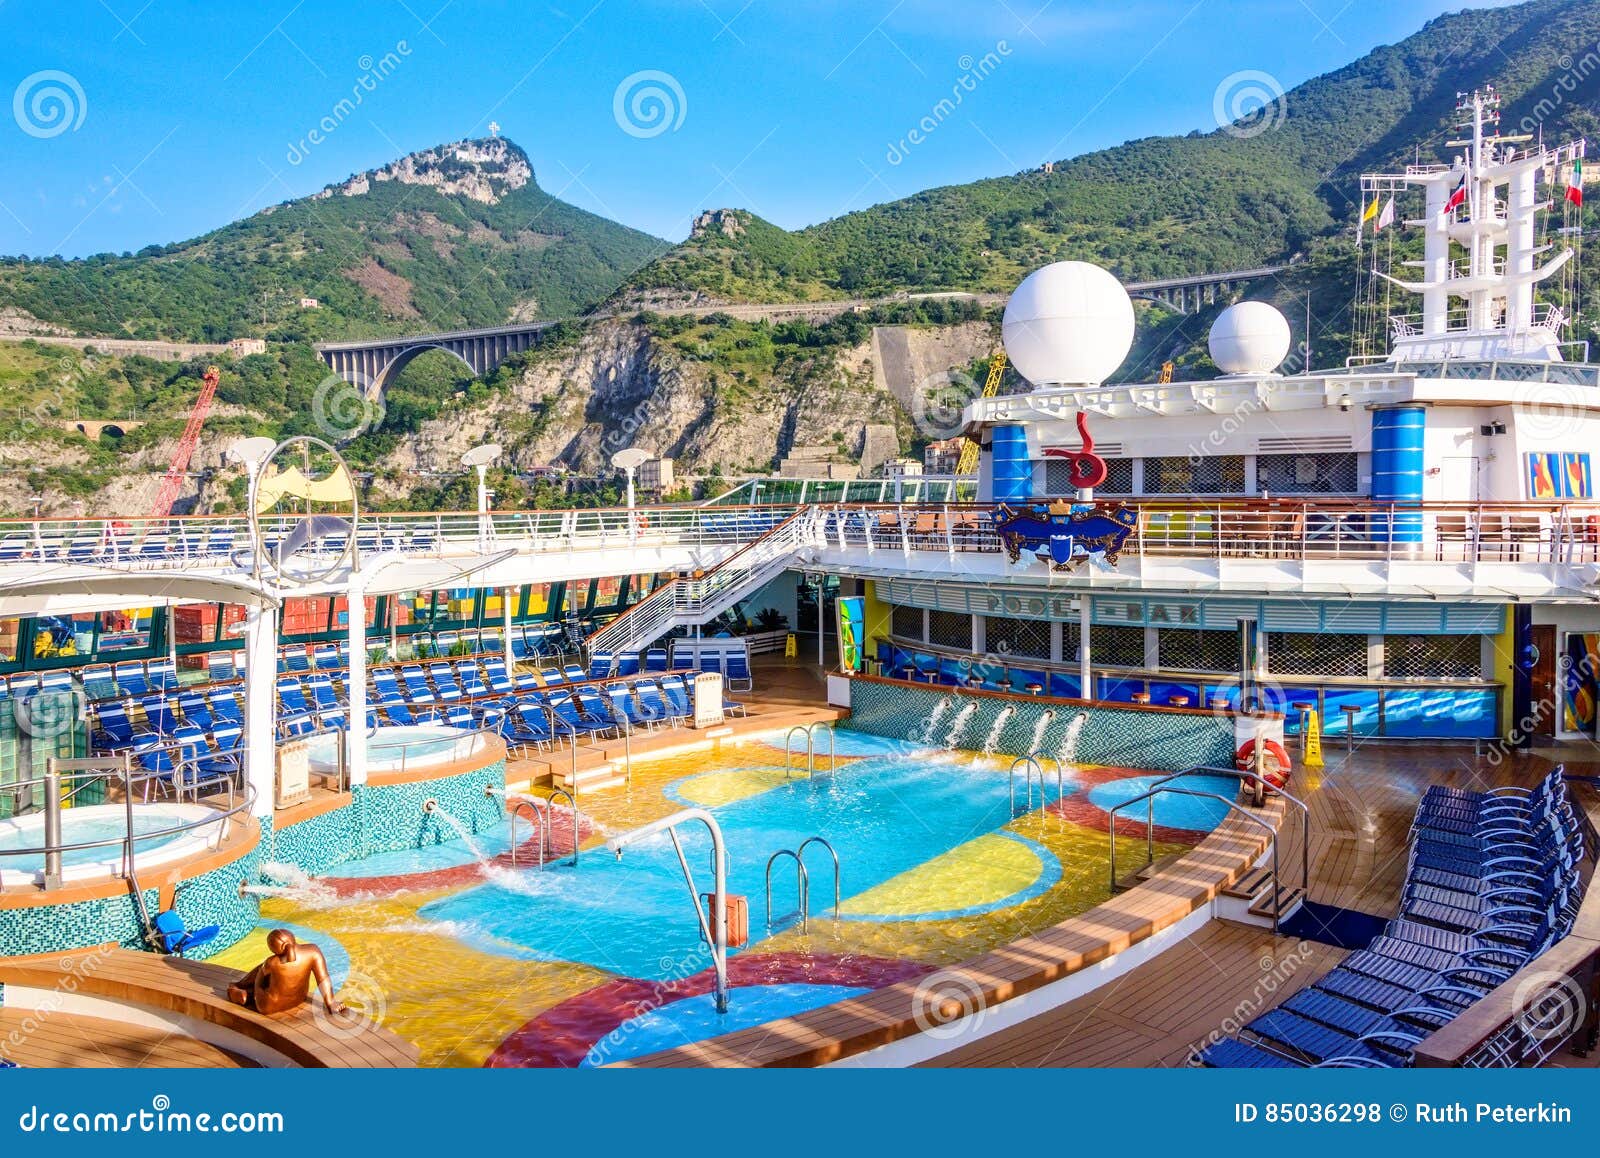 cruise ships amalfi coast italy